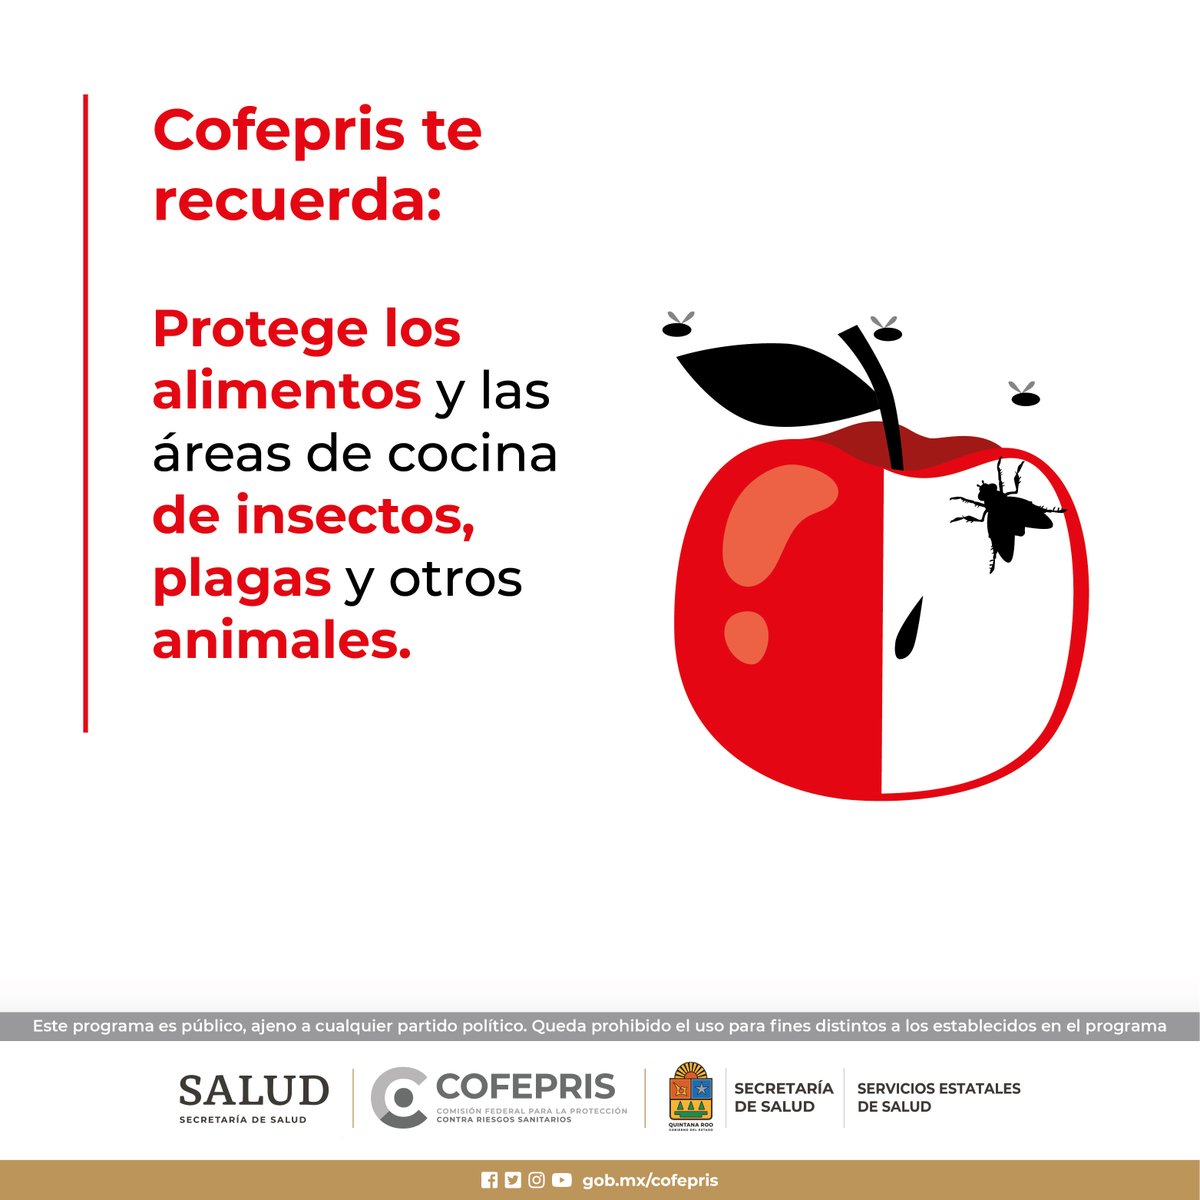 Protege los alimentos y las áreas de cocina de insectos, plagas y otros animales.
@COFEPRIS 
#CofeprisTeProtege
#cofepriságil
#CofeprisJusta
#CofeprisTransparente
#Emergencias
#DprisQroo